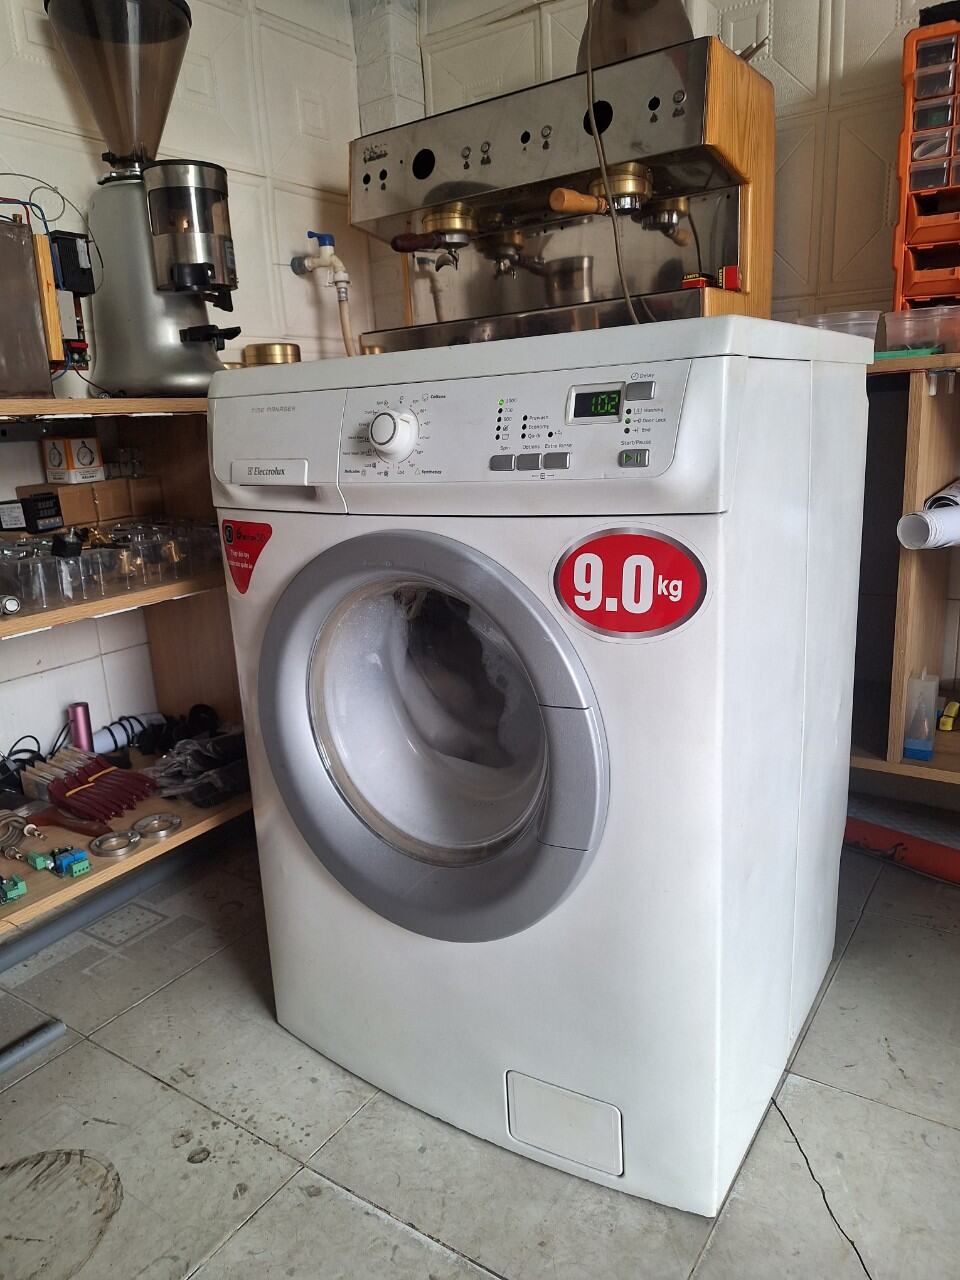 Máy giặt Electrolux 9kg cửa trước đã qua sử dụng.thanh lý lh0923.099.799